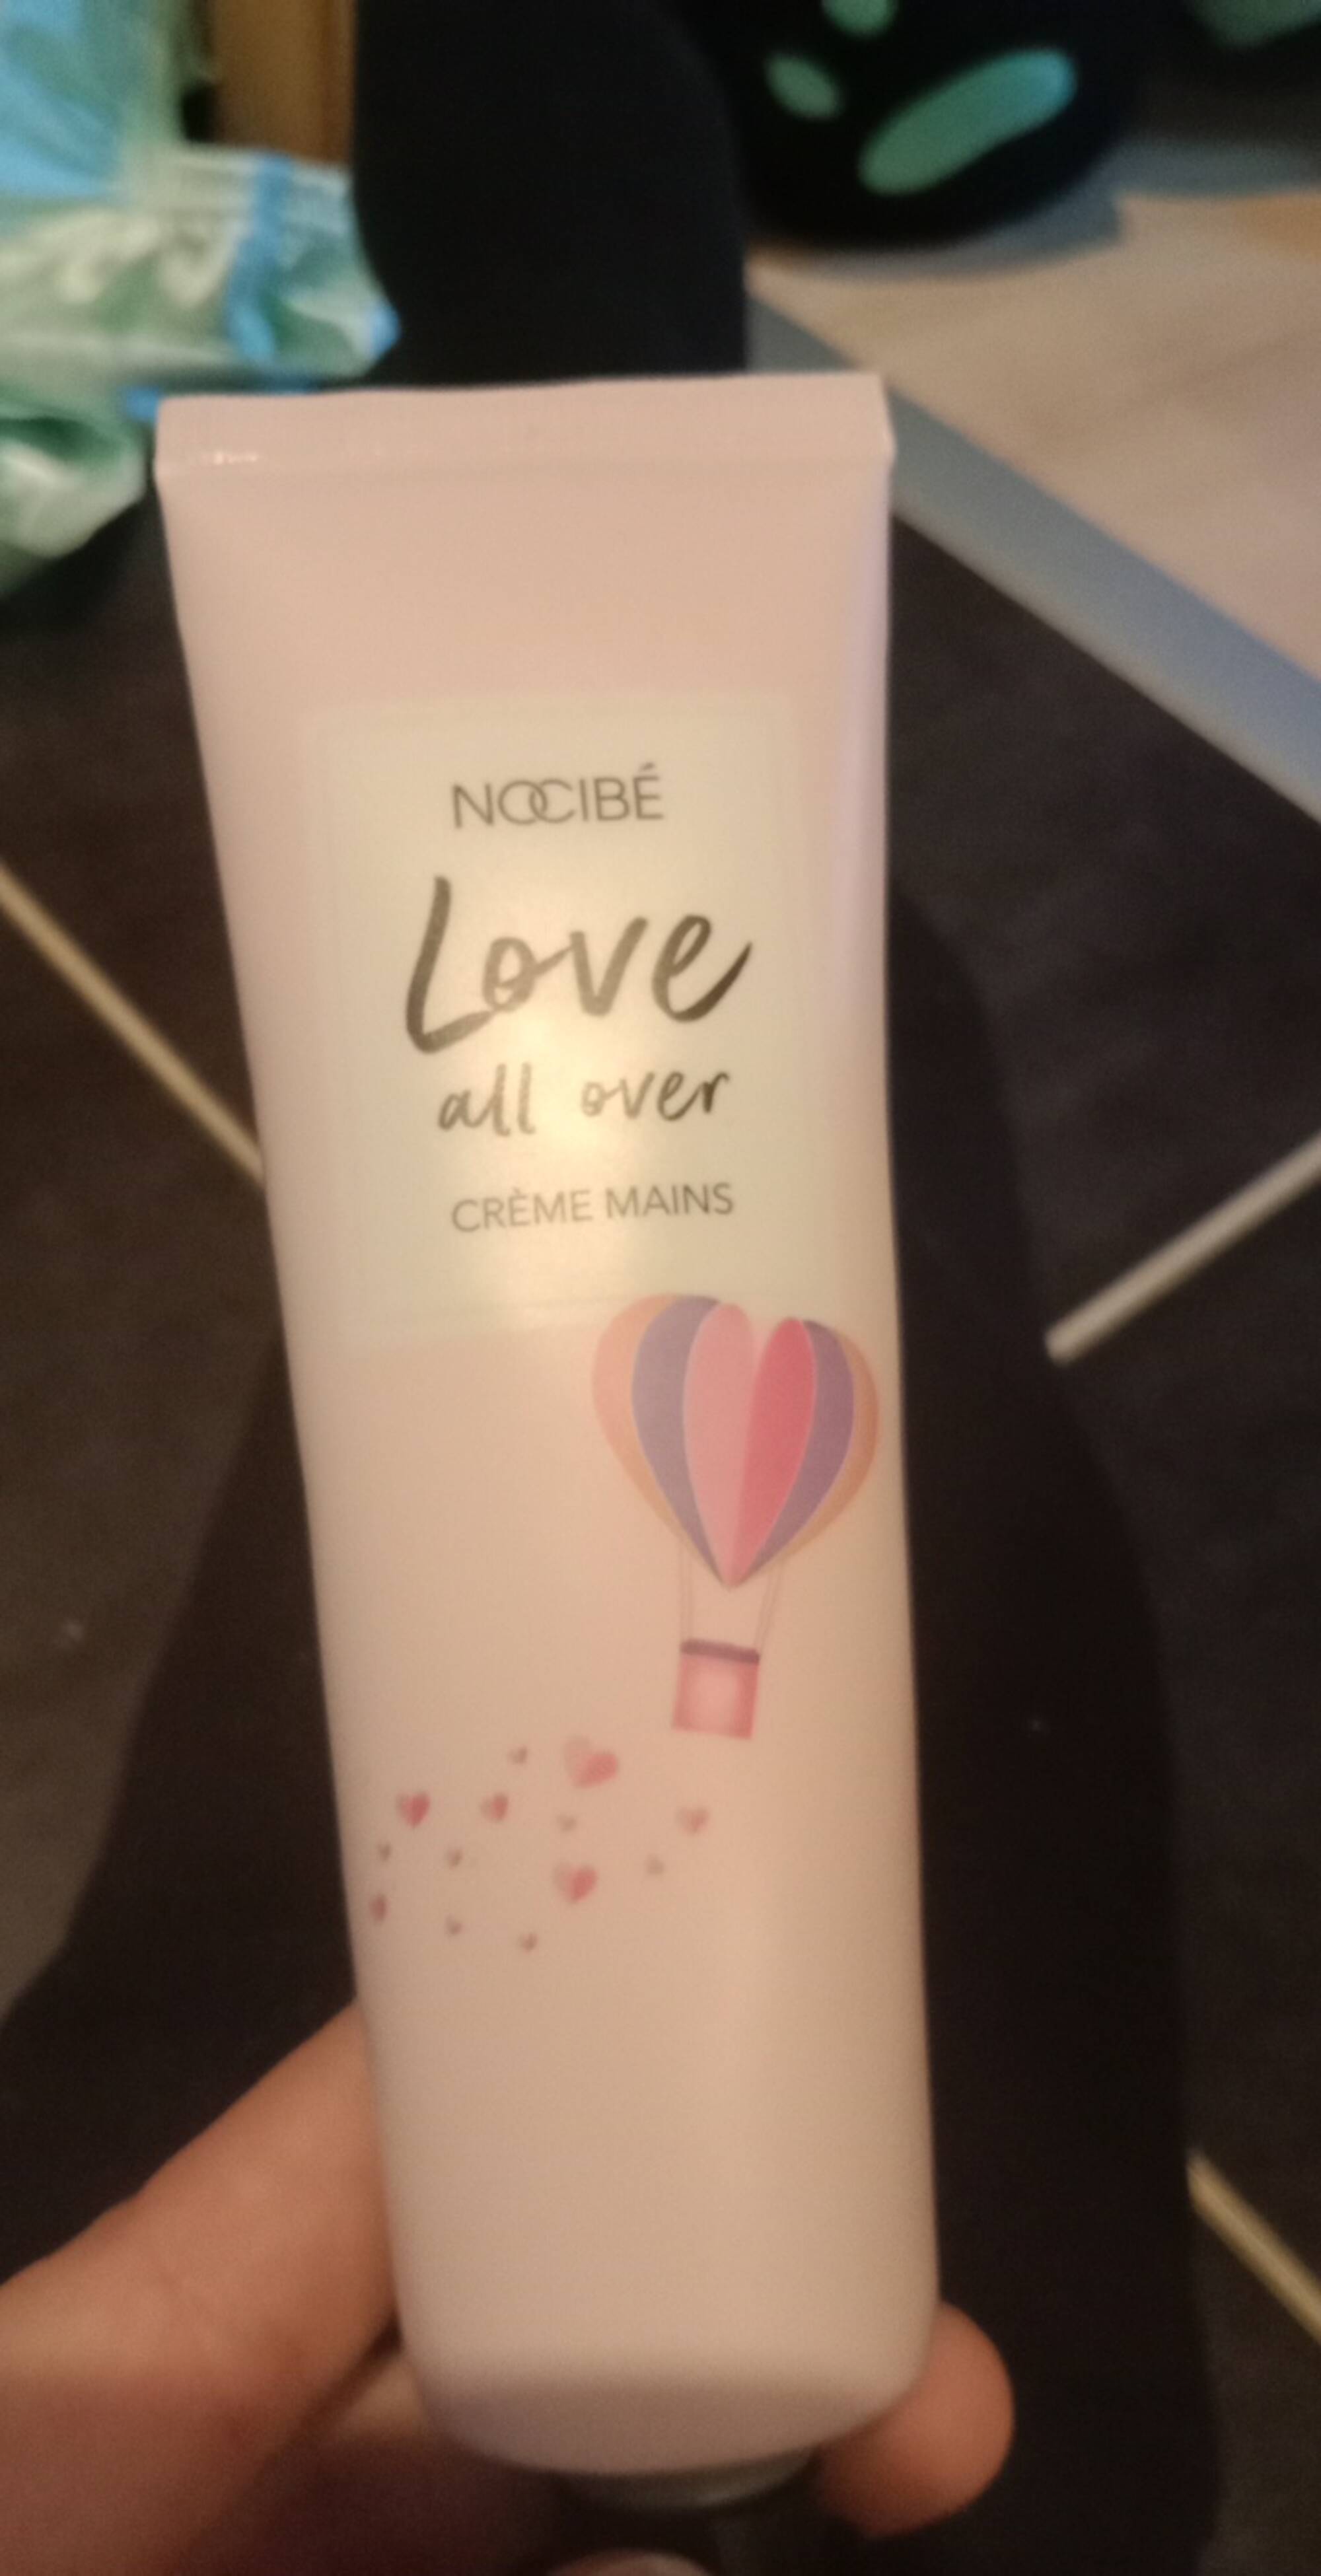 NOCIBÉ - Love all over - Crème mains